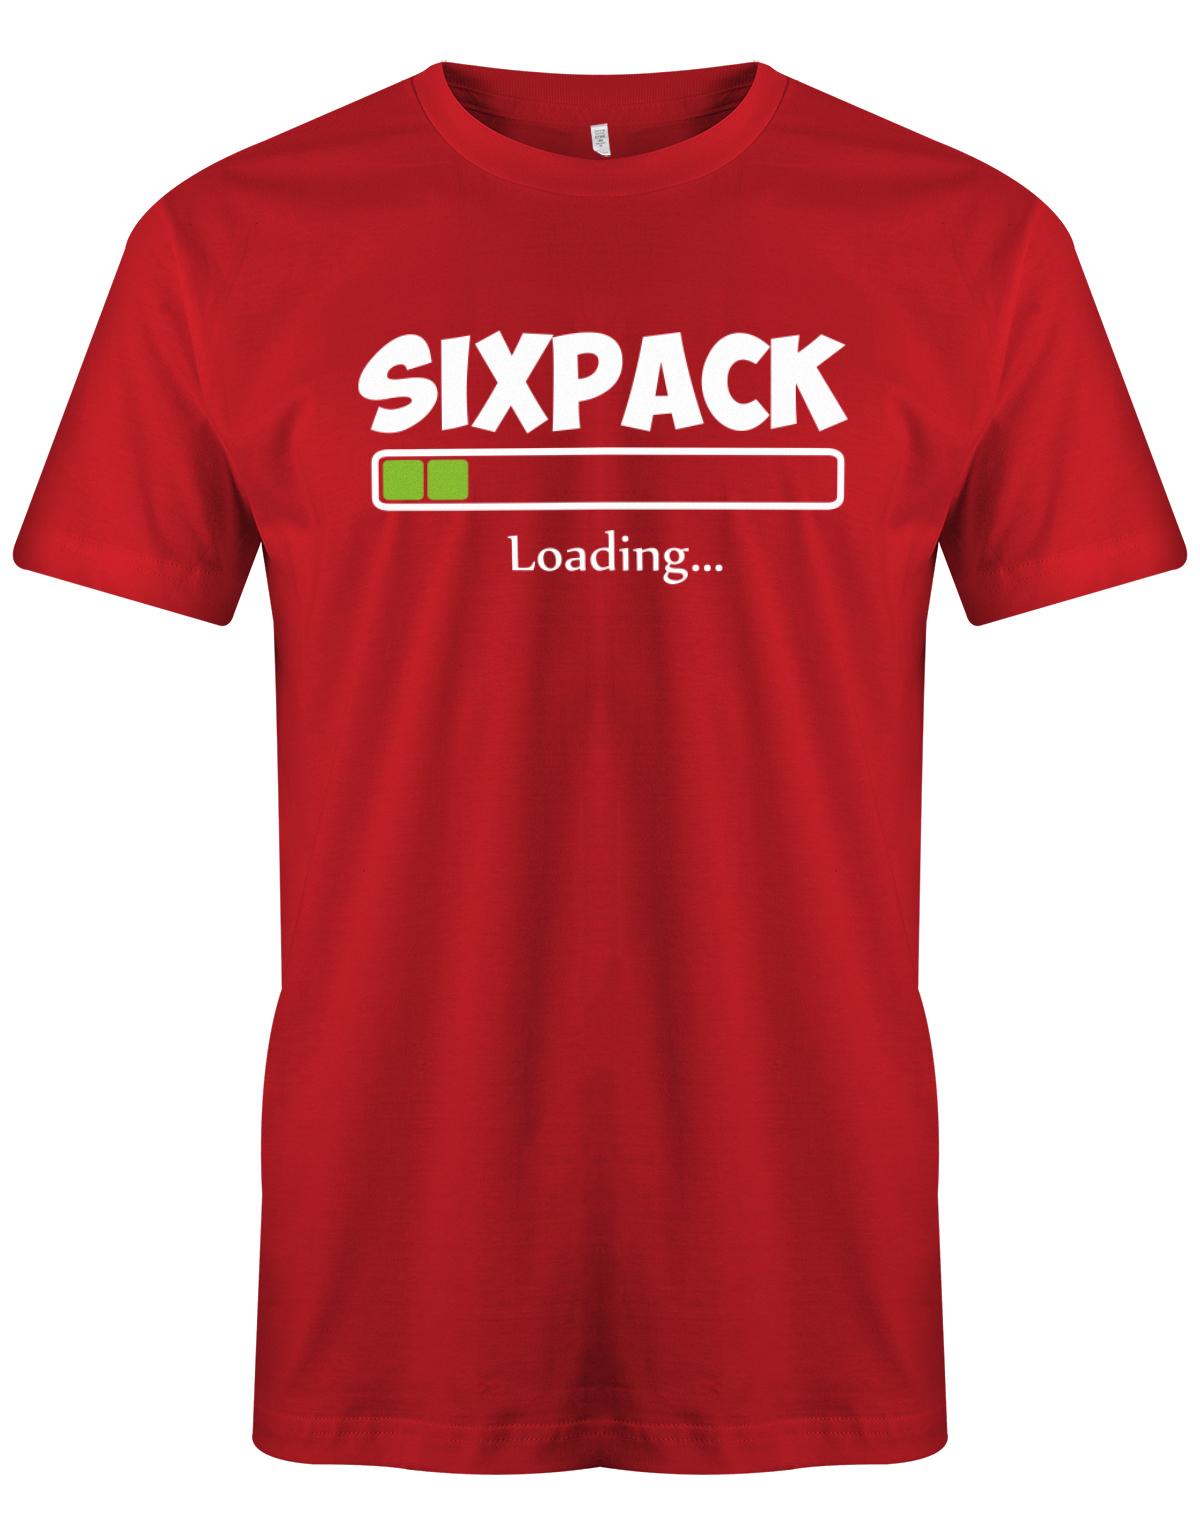 Sixpack-loading-Herren-Shirt-Rot